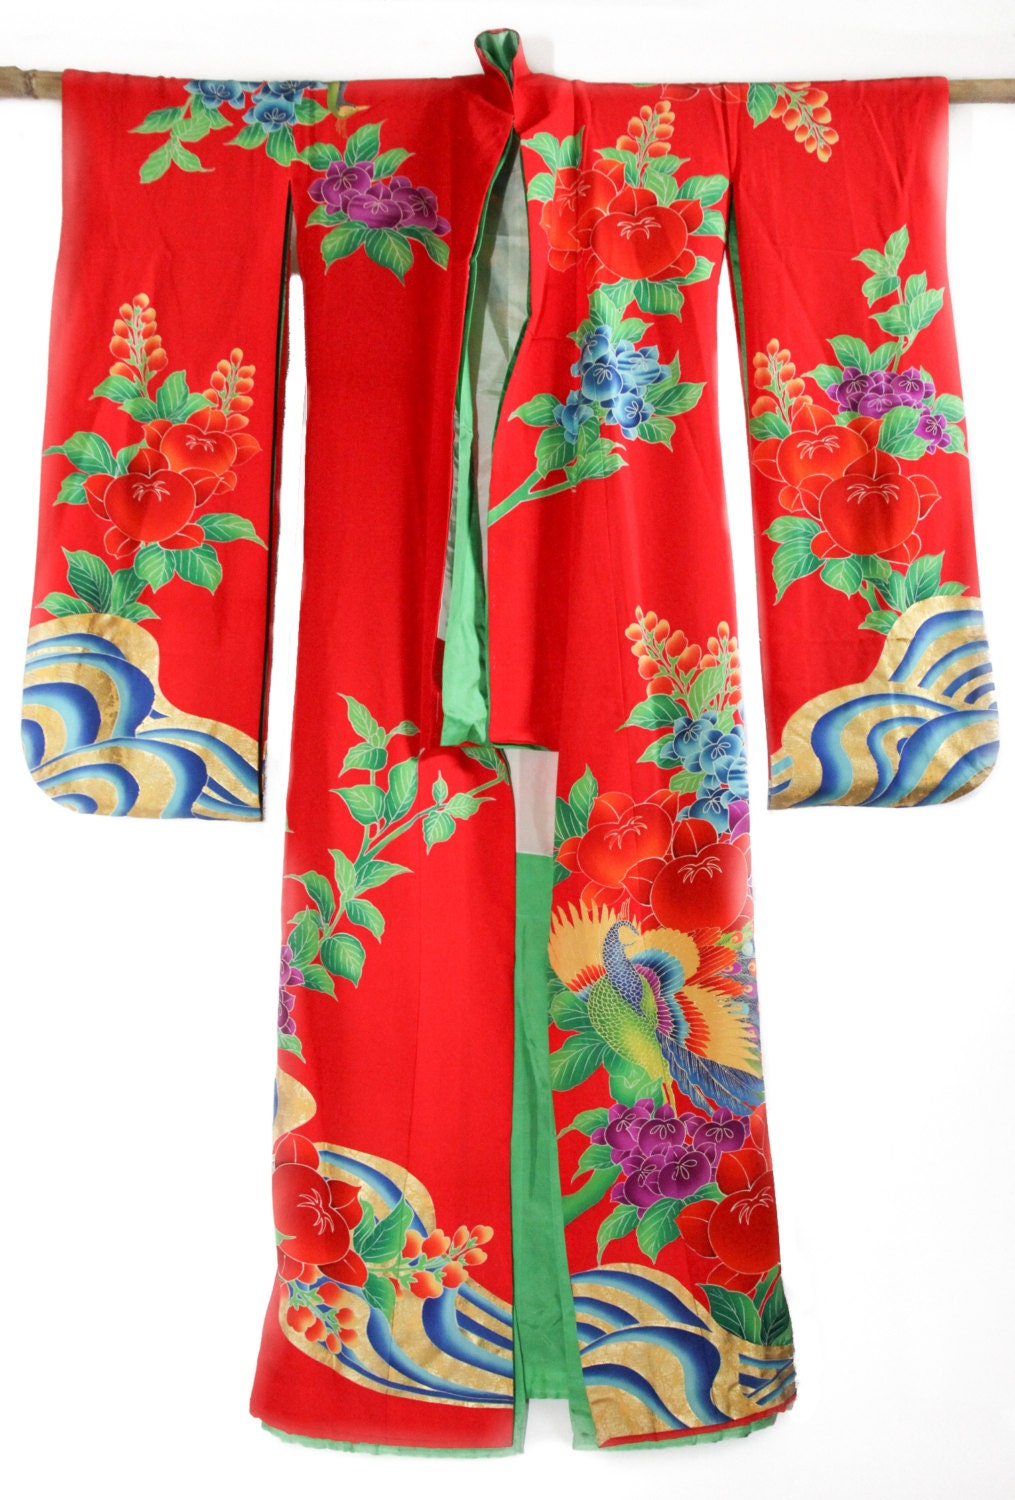 Kakeshita Red Wedding Kimono Vintage Japanese Robe Kimono